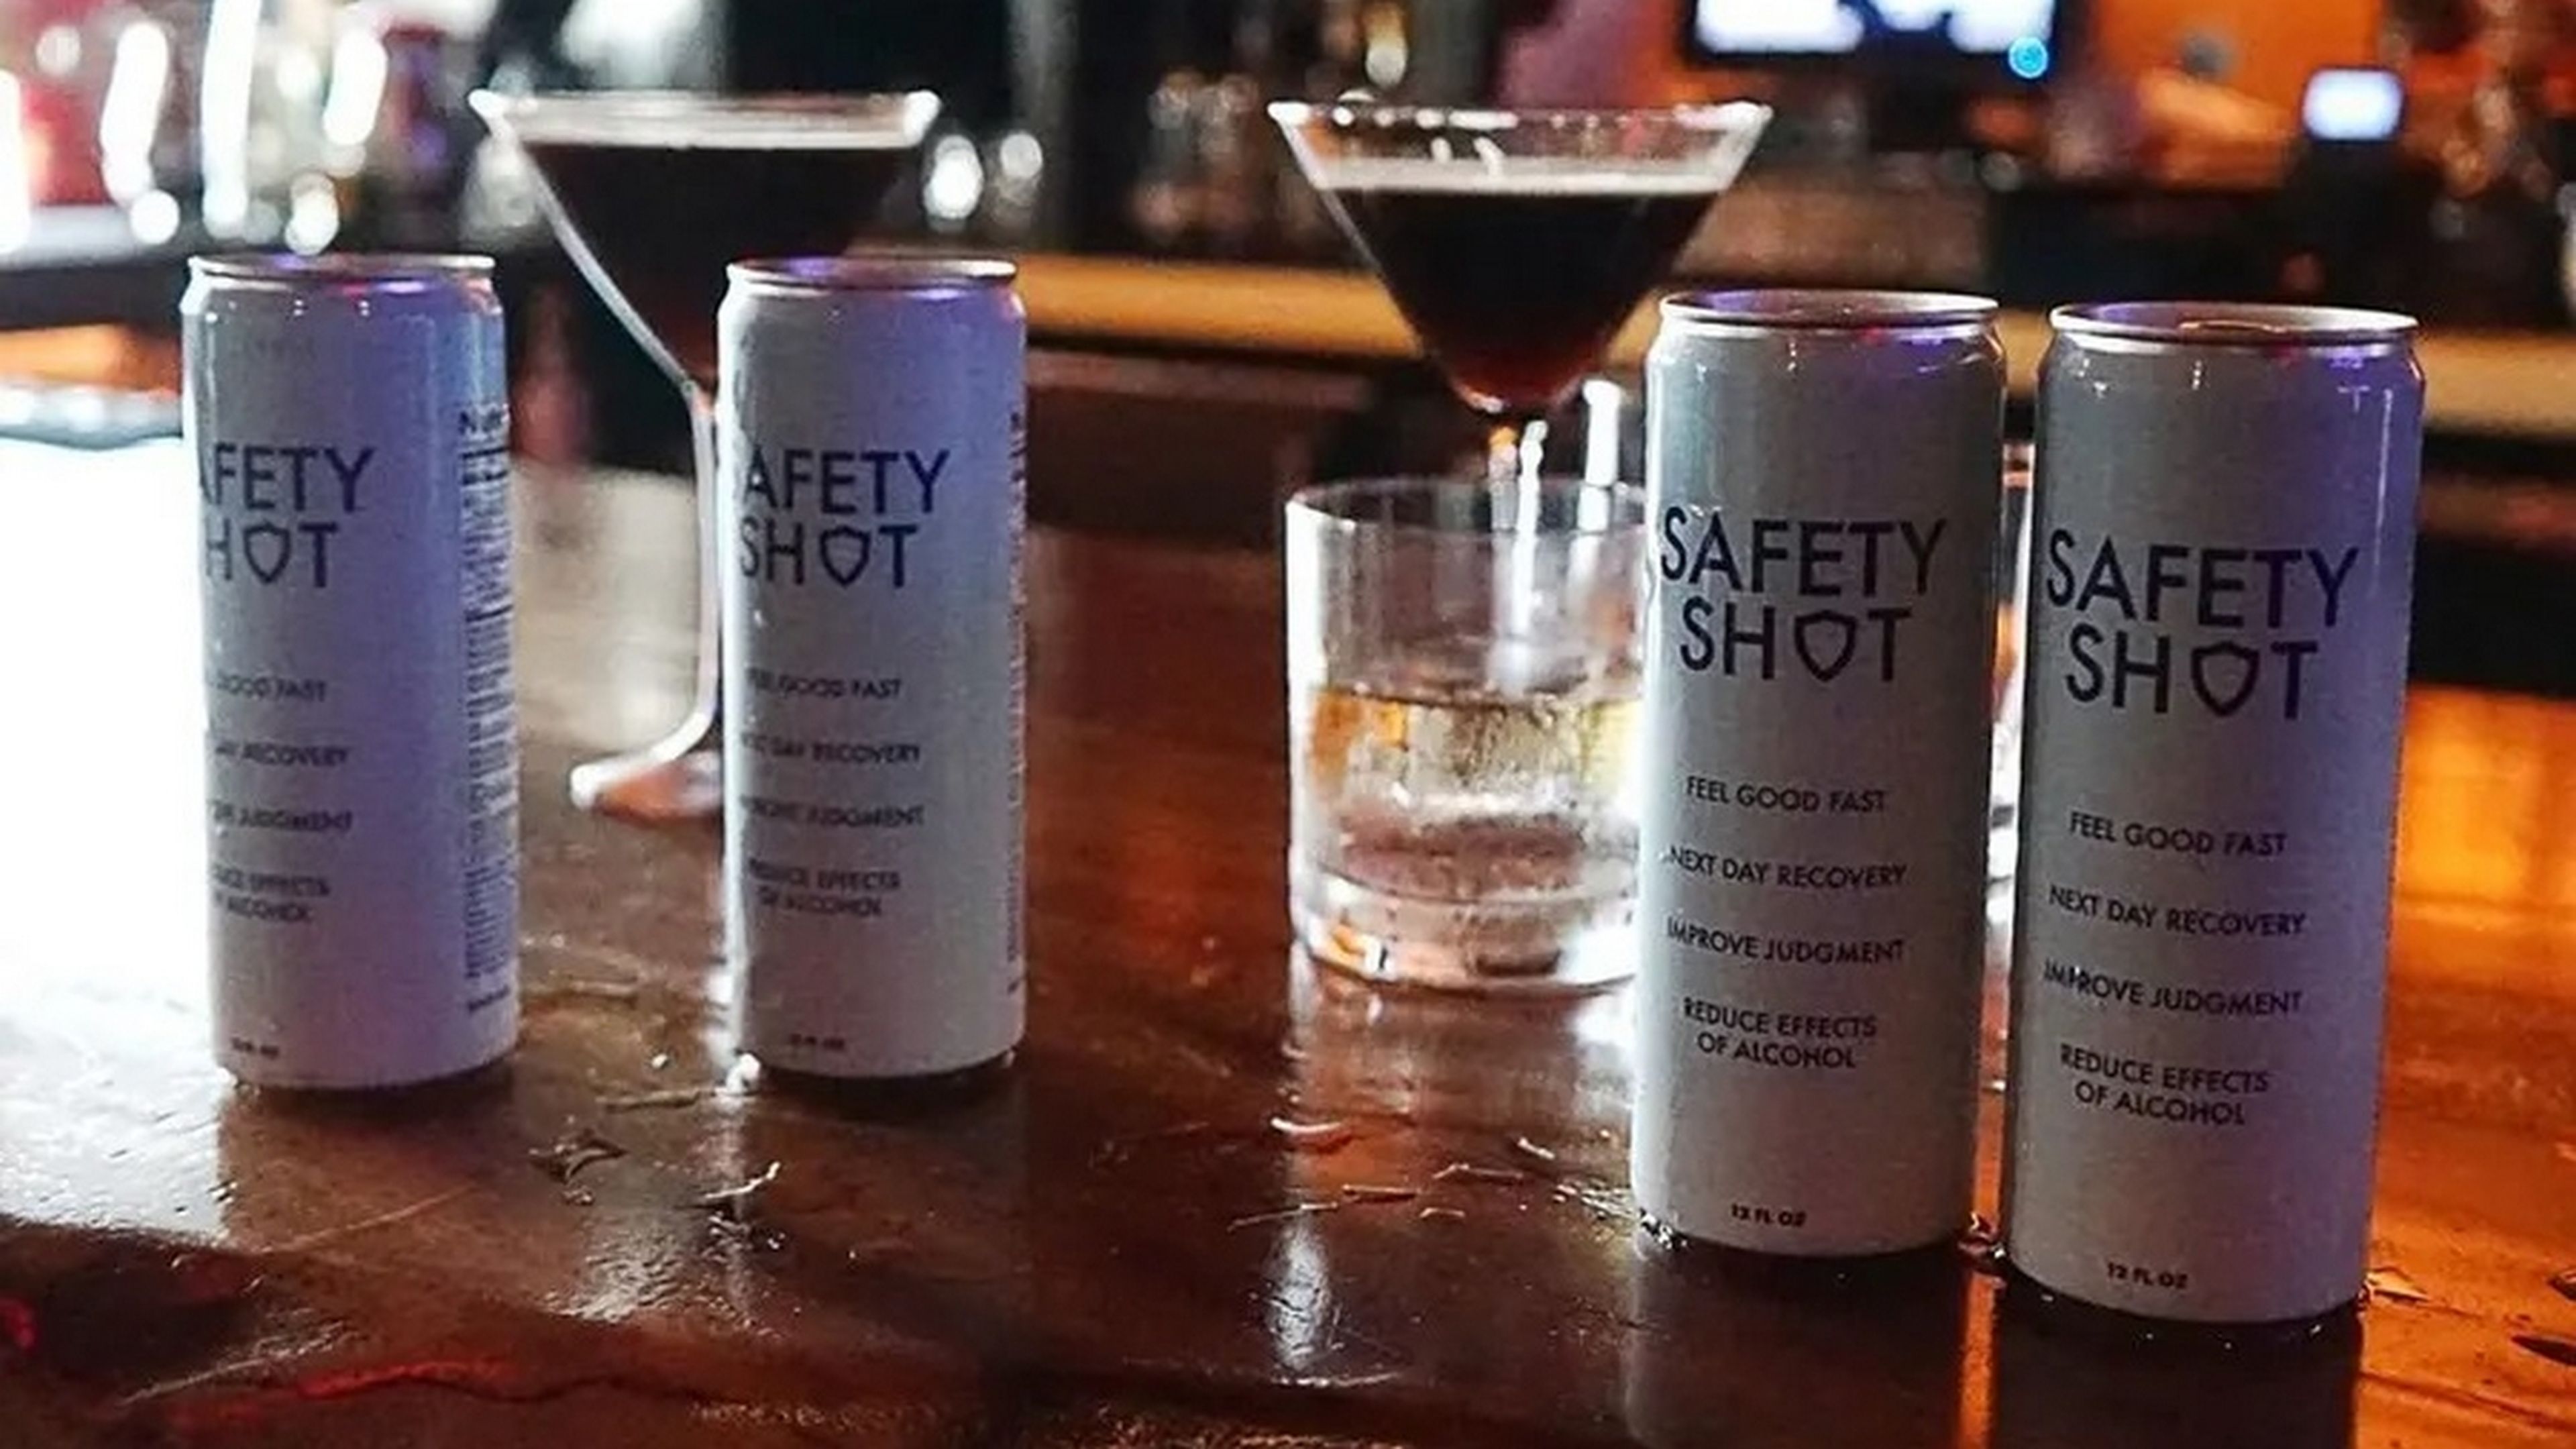 Safely Shot, la bebida que promete eliminar el alcohol en sangre en 30 minutos